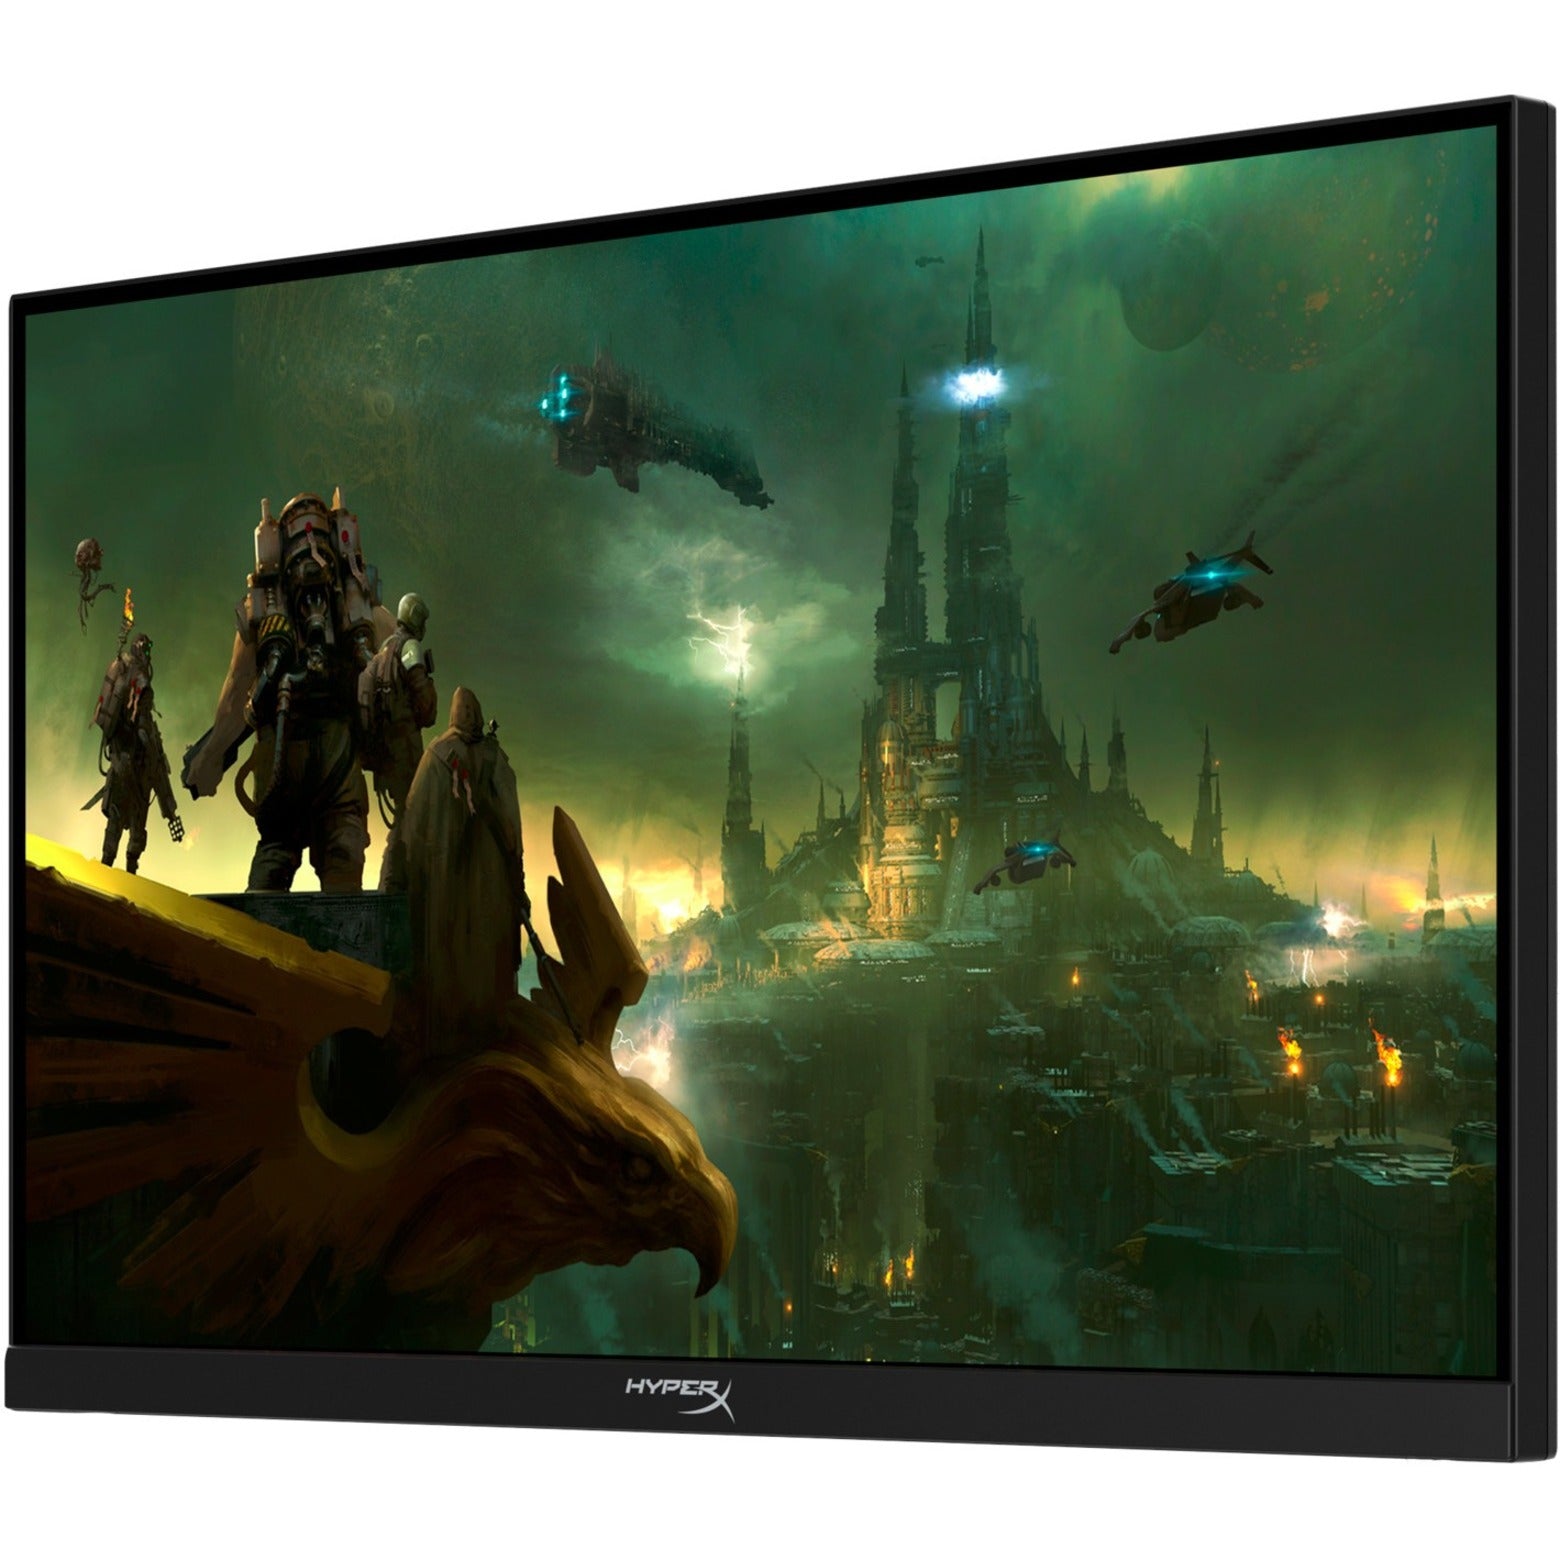 HyperX Armada 25 FHD Gaming Monitor, 24.5" Full HD, 240Hz, G-sync